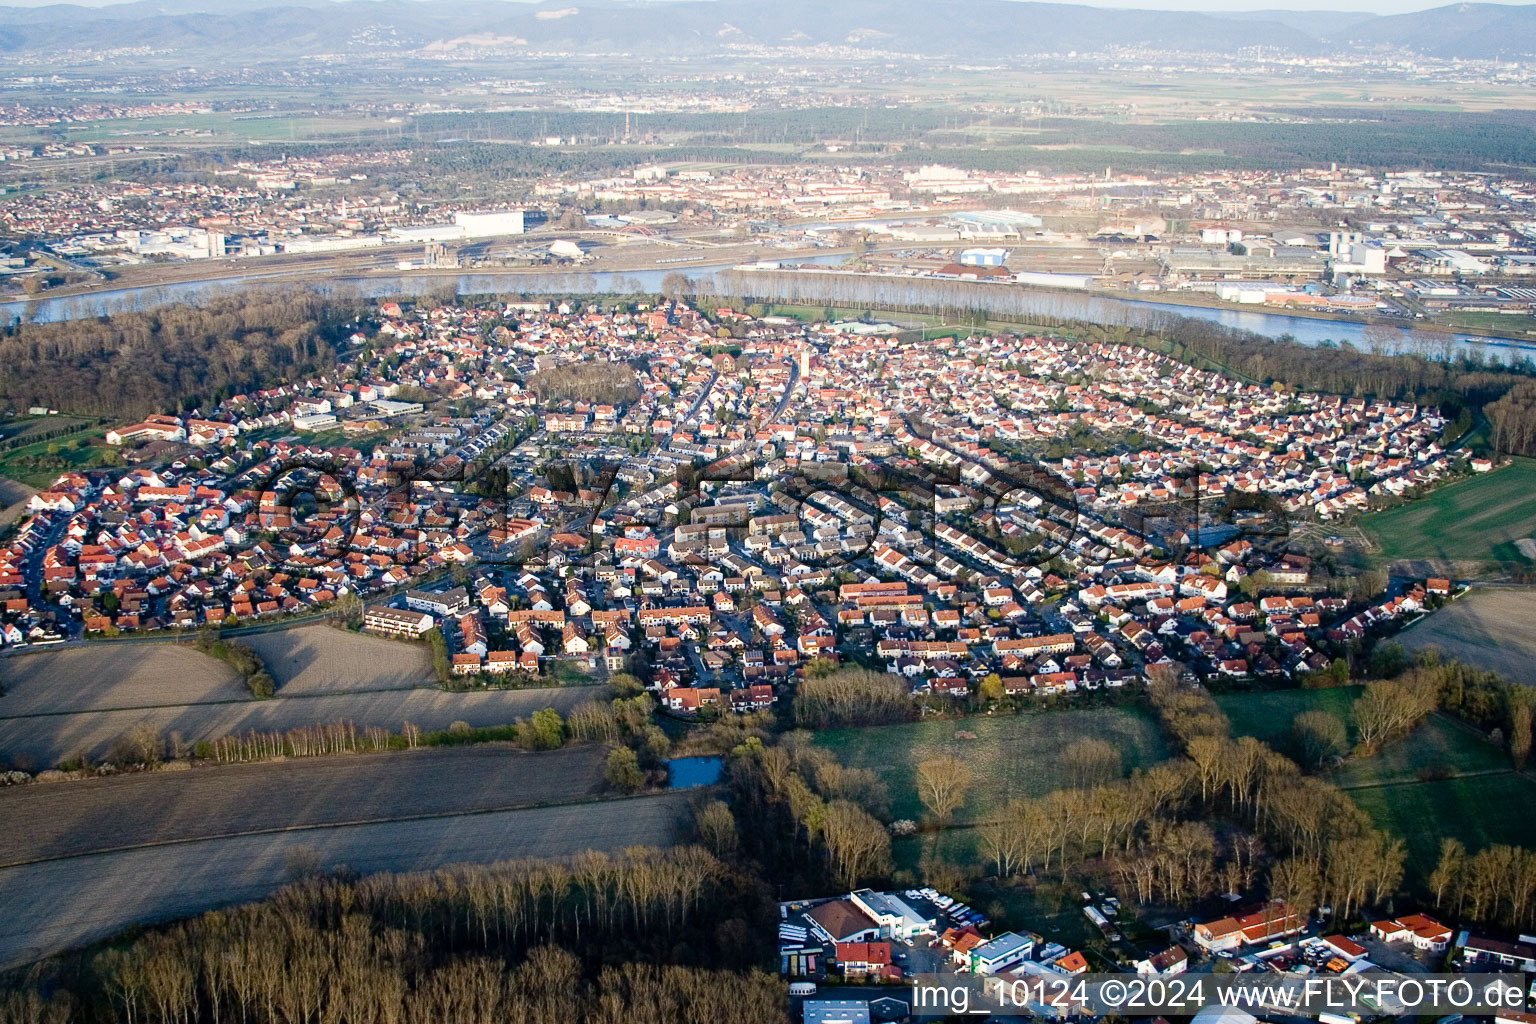 Luftbild von Ortsansicht der Straßen und Häuser der Wohngebiete in Altrip im Bundesland Rheinland-Pfalz, Deutschland